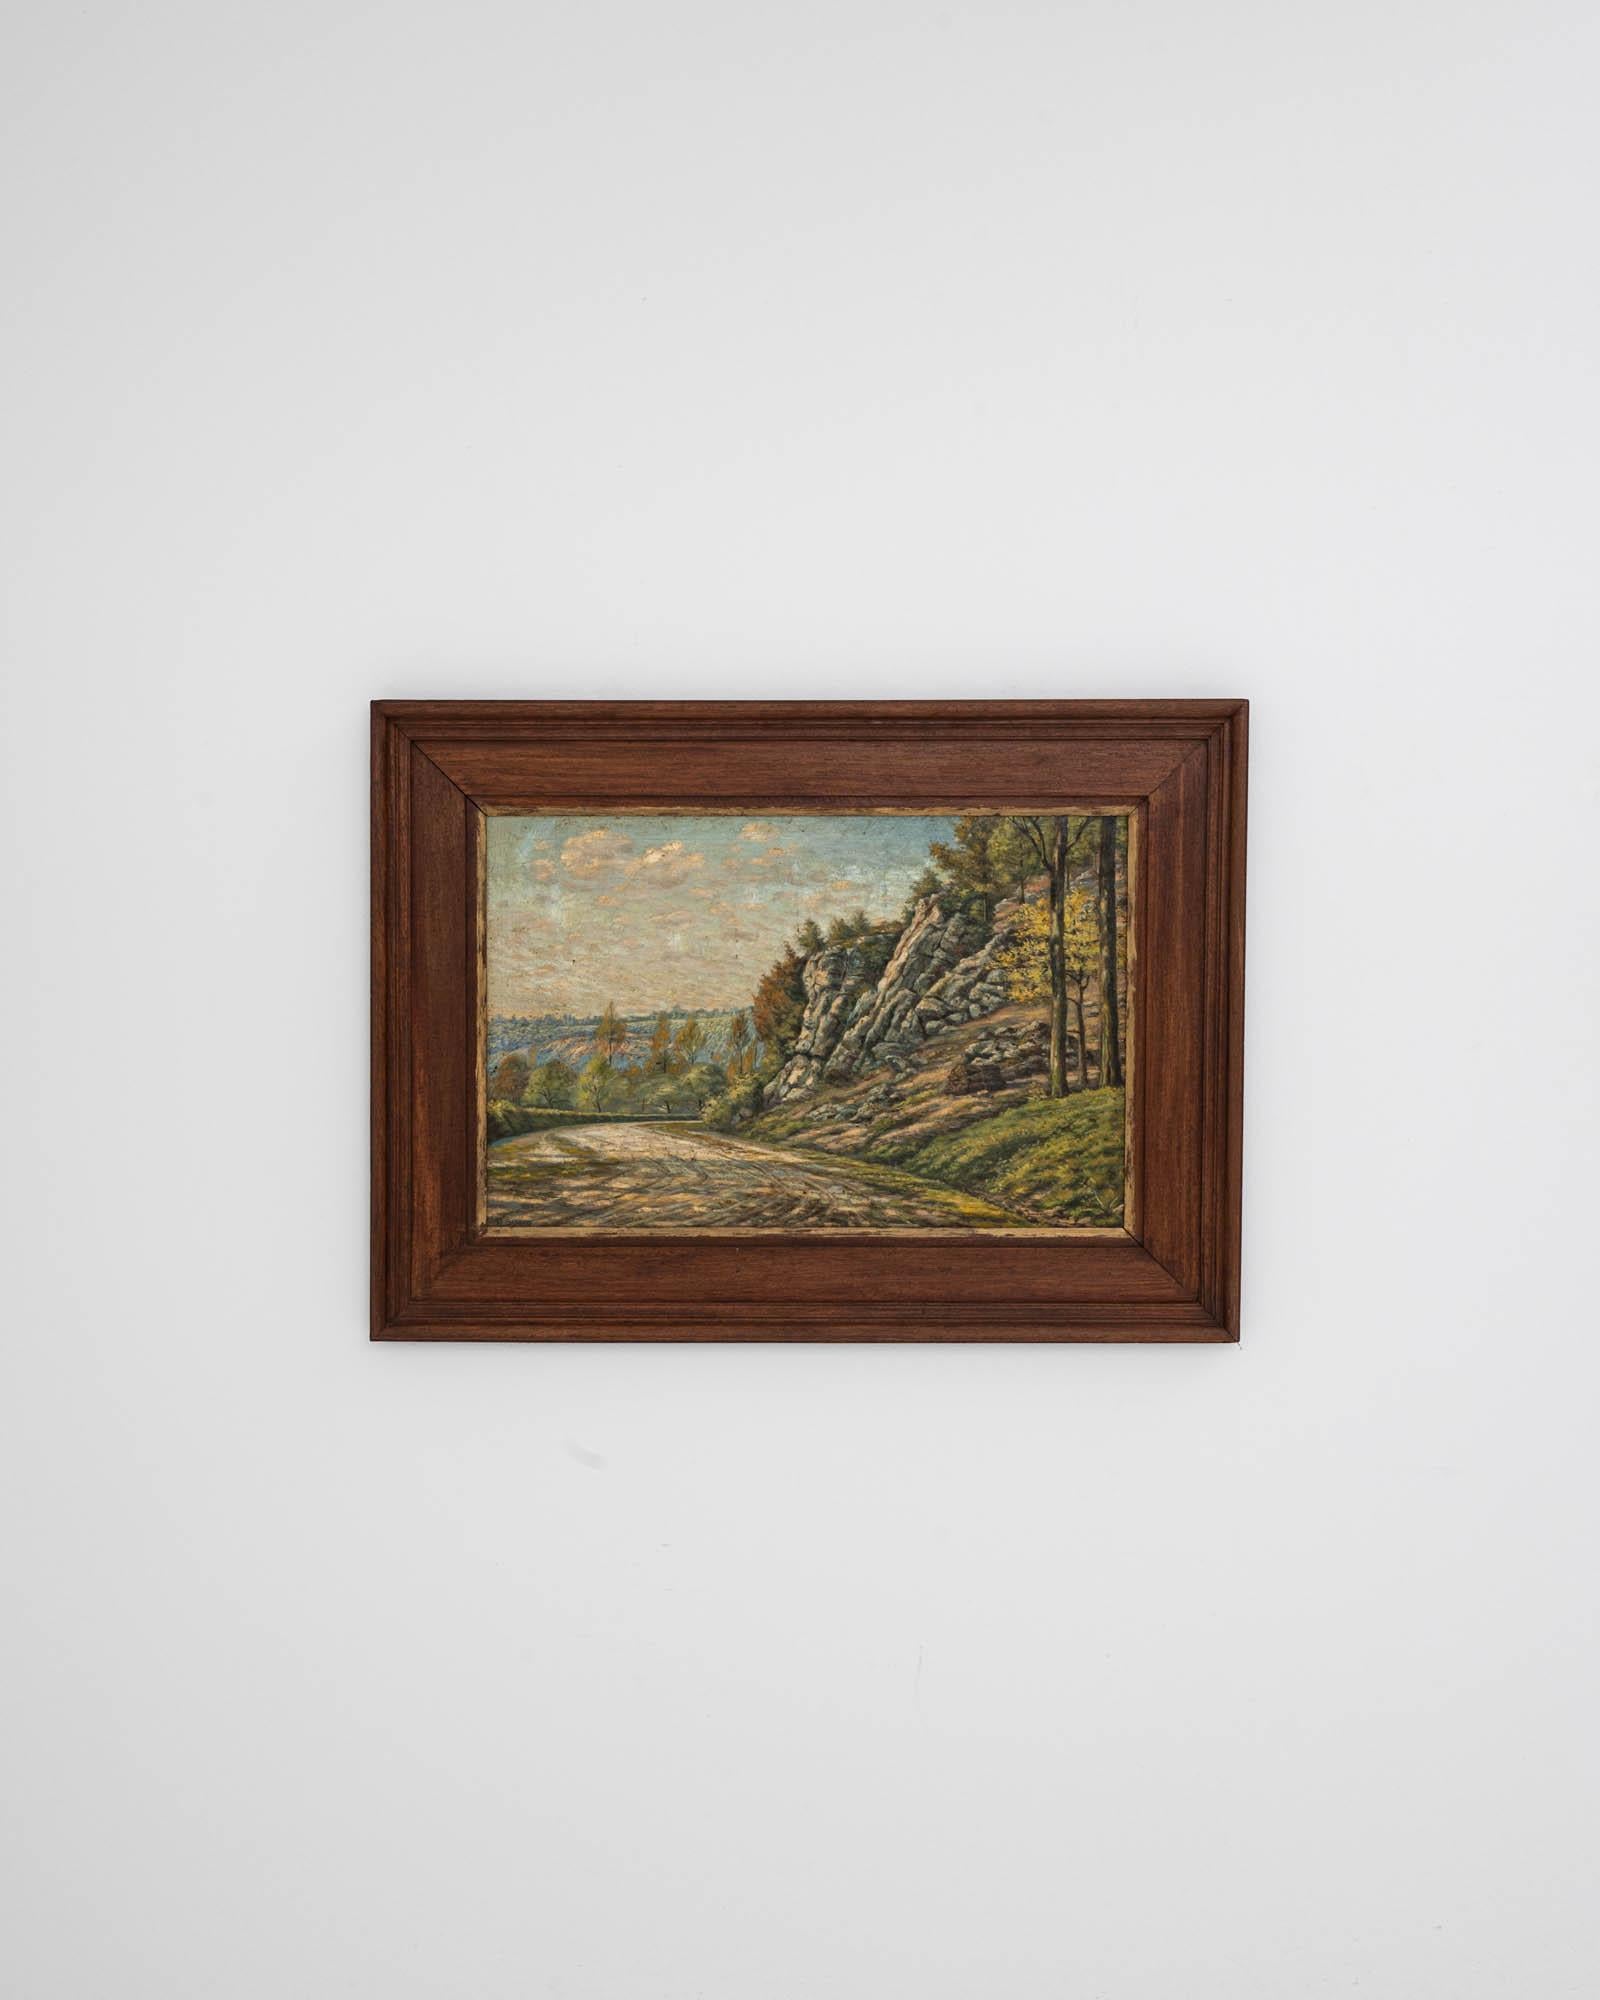 Inscrite dans un élégant cadre en bois de grande taille, cette peinture du XXe siècle représente un paysage paisible avec une route de village ouverte qui serpente à travers de vastes champs et des arbres, probablement en Belgique, le lieu d'origine